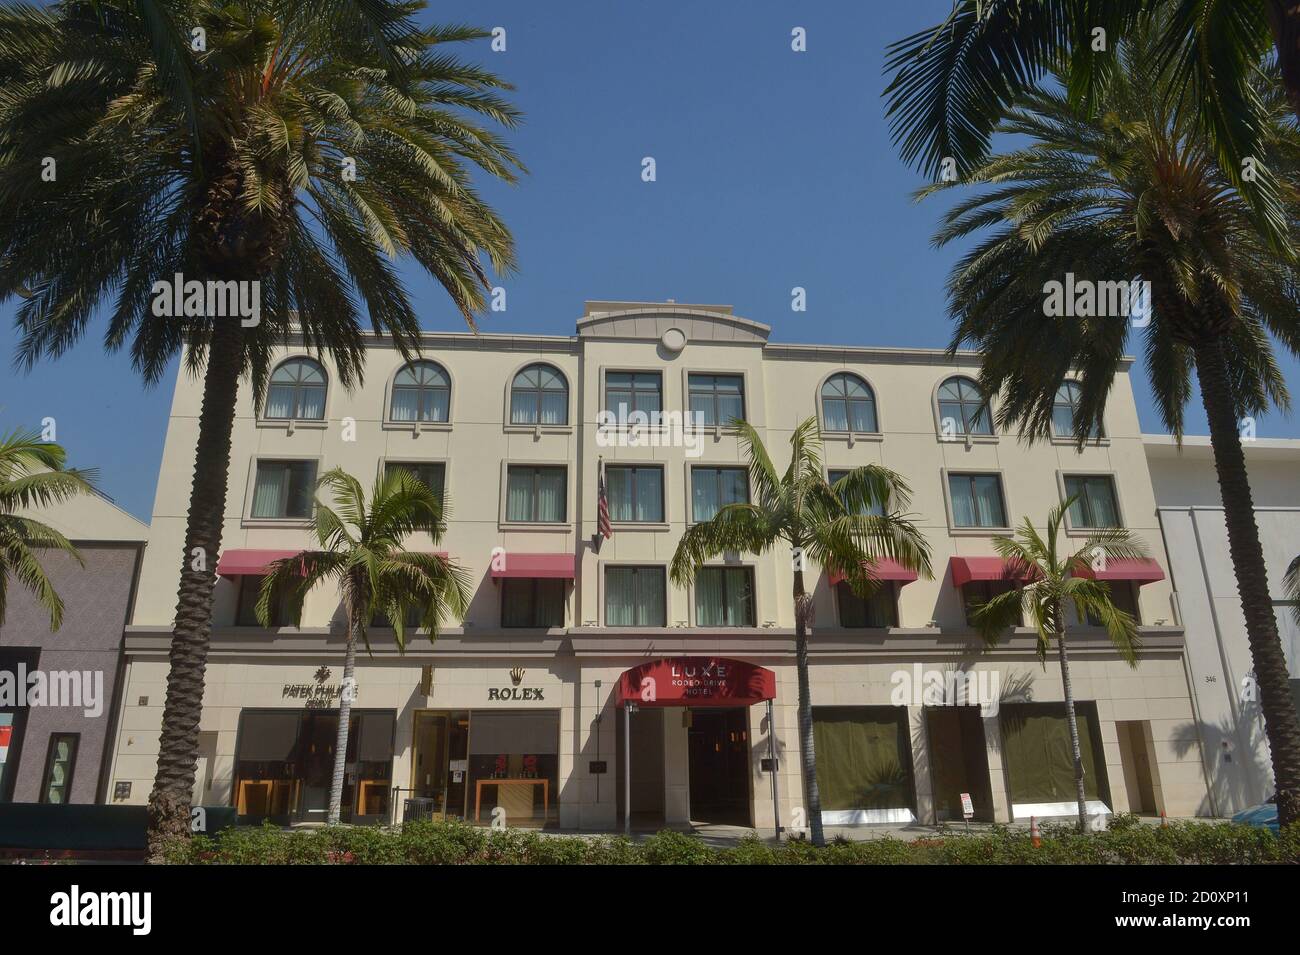 Beverly Hills, Usa. Oktober 2020. Das Luxe Rodeo Drive Hotel in Beverly Hills ist am Freitag, den 2. Oktober 2020 abgebildet. Das Hotel wurde geschlossen, unter Berufung auf die finanziellen Auswirkungen der COVID-19-Krise., als der steile Rückgang der Tourismus-und Geschäftsreisen hat die Hotellerie verwüstet. Das Luxe Rodeo Drive Hotel ist das erste High-End-Hotel in der Gegend von Los Angeles, das aufgrund der Pandemie aus dem Geschäft geht. Foto von Jim Ruymen/UPI Kredit: UPI/Alamy Live Nachrichten Stockfoto